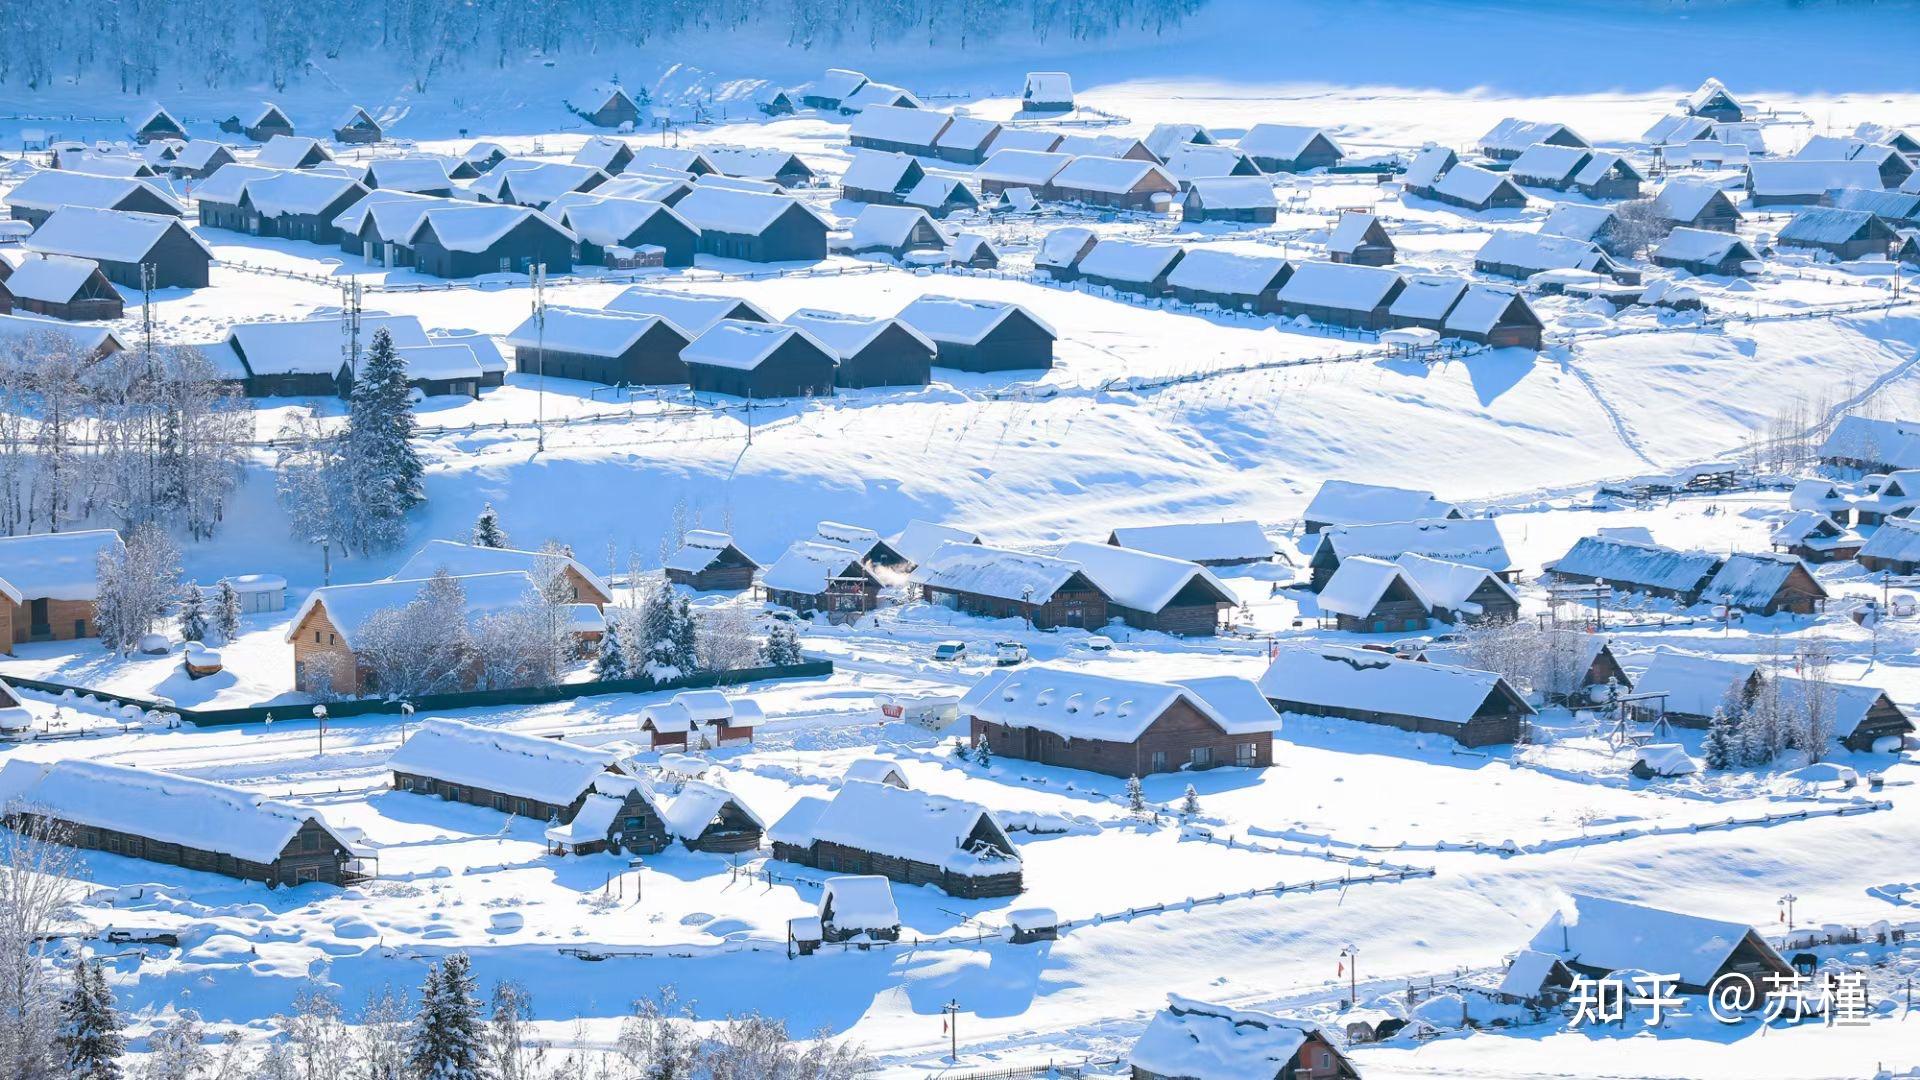 2021 年冬天,你拍得最美的雪景照片是怎样的? 